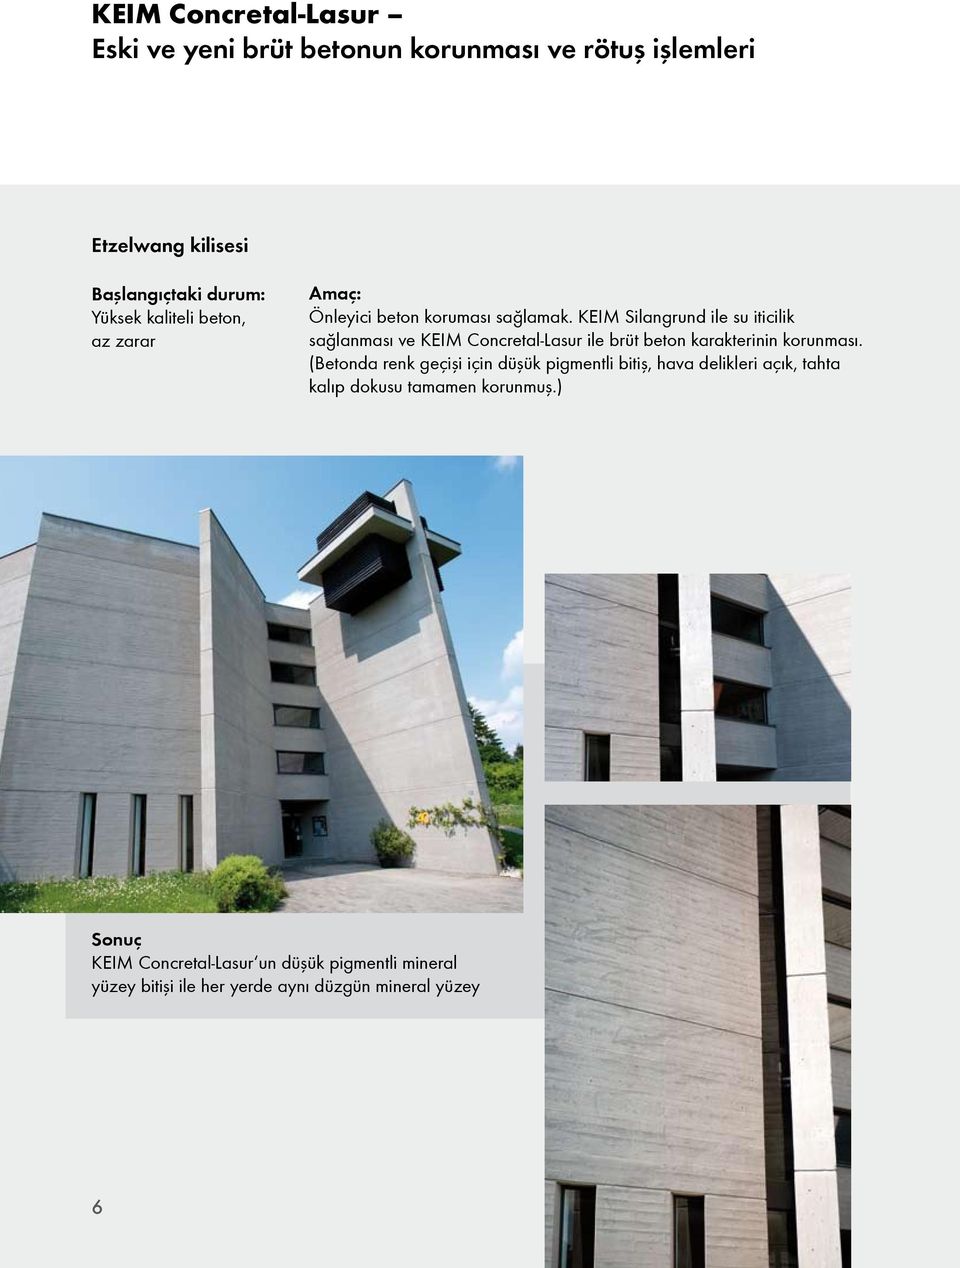 KEIM Silangrund ile su iticilik sağlanması ve KEIM Concretal-Lasur ile brüt beton karakterinin korunması.